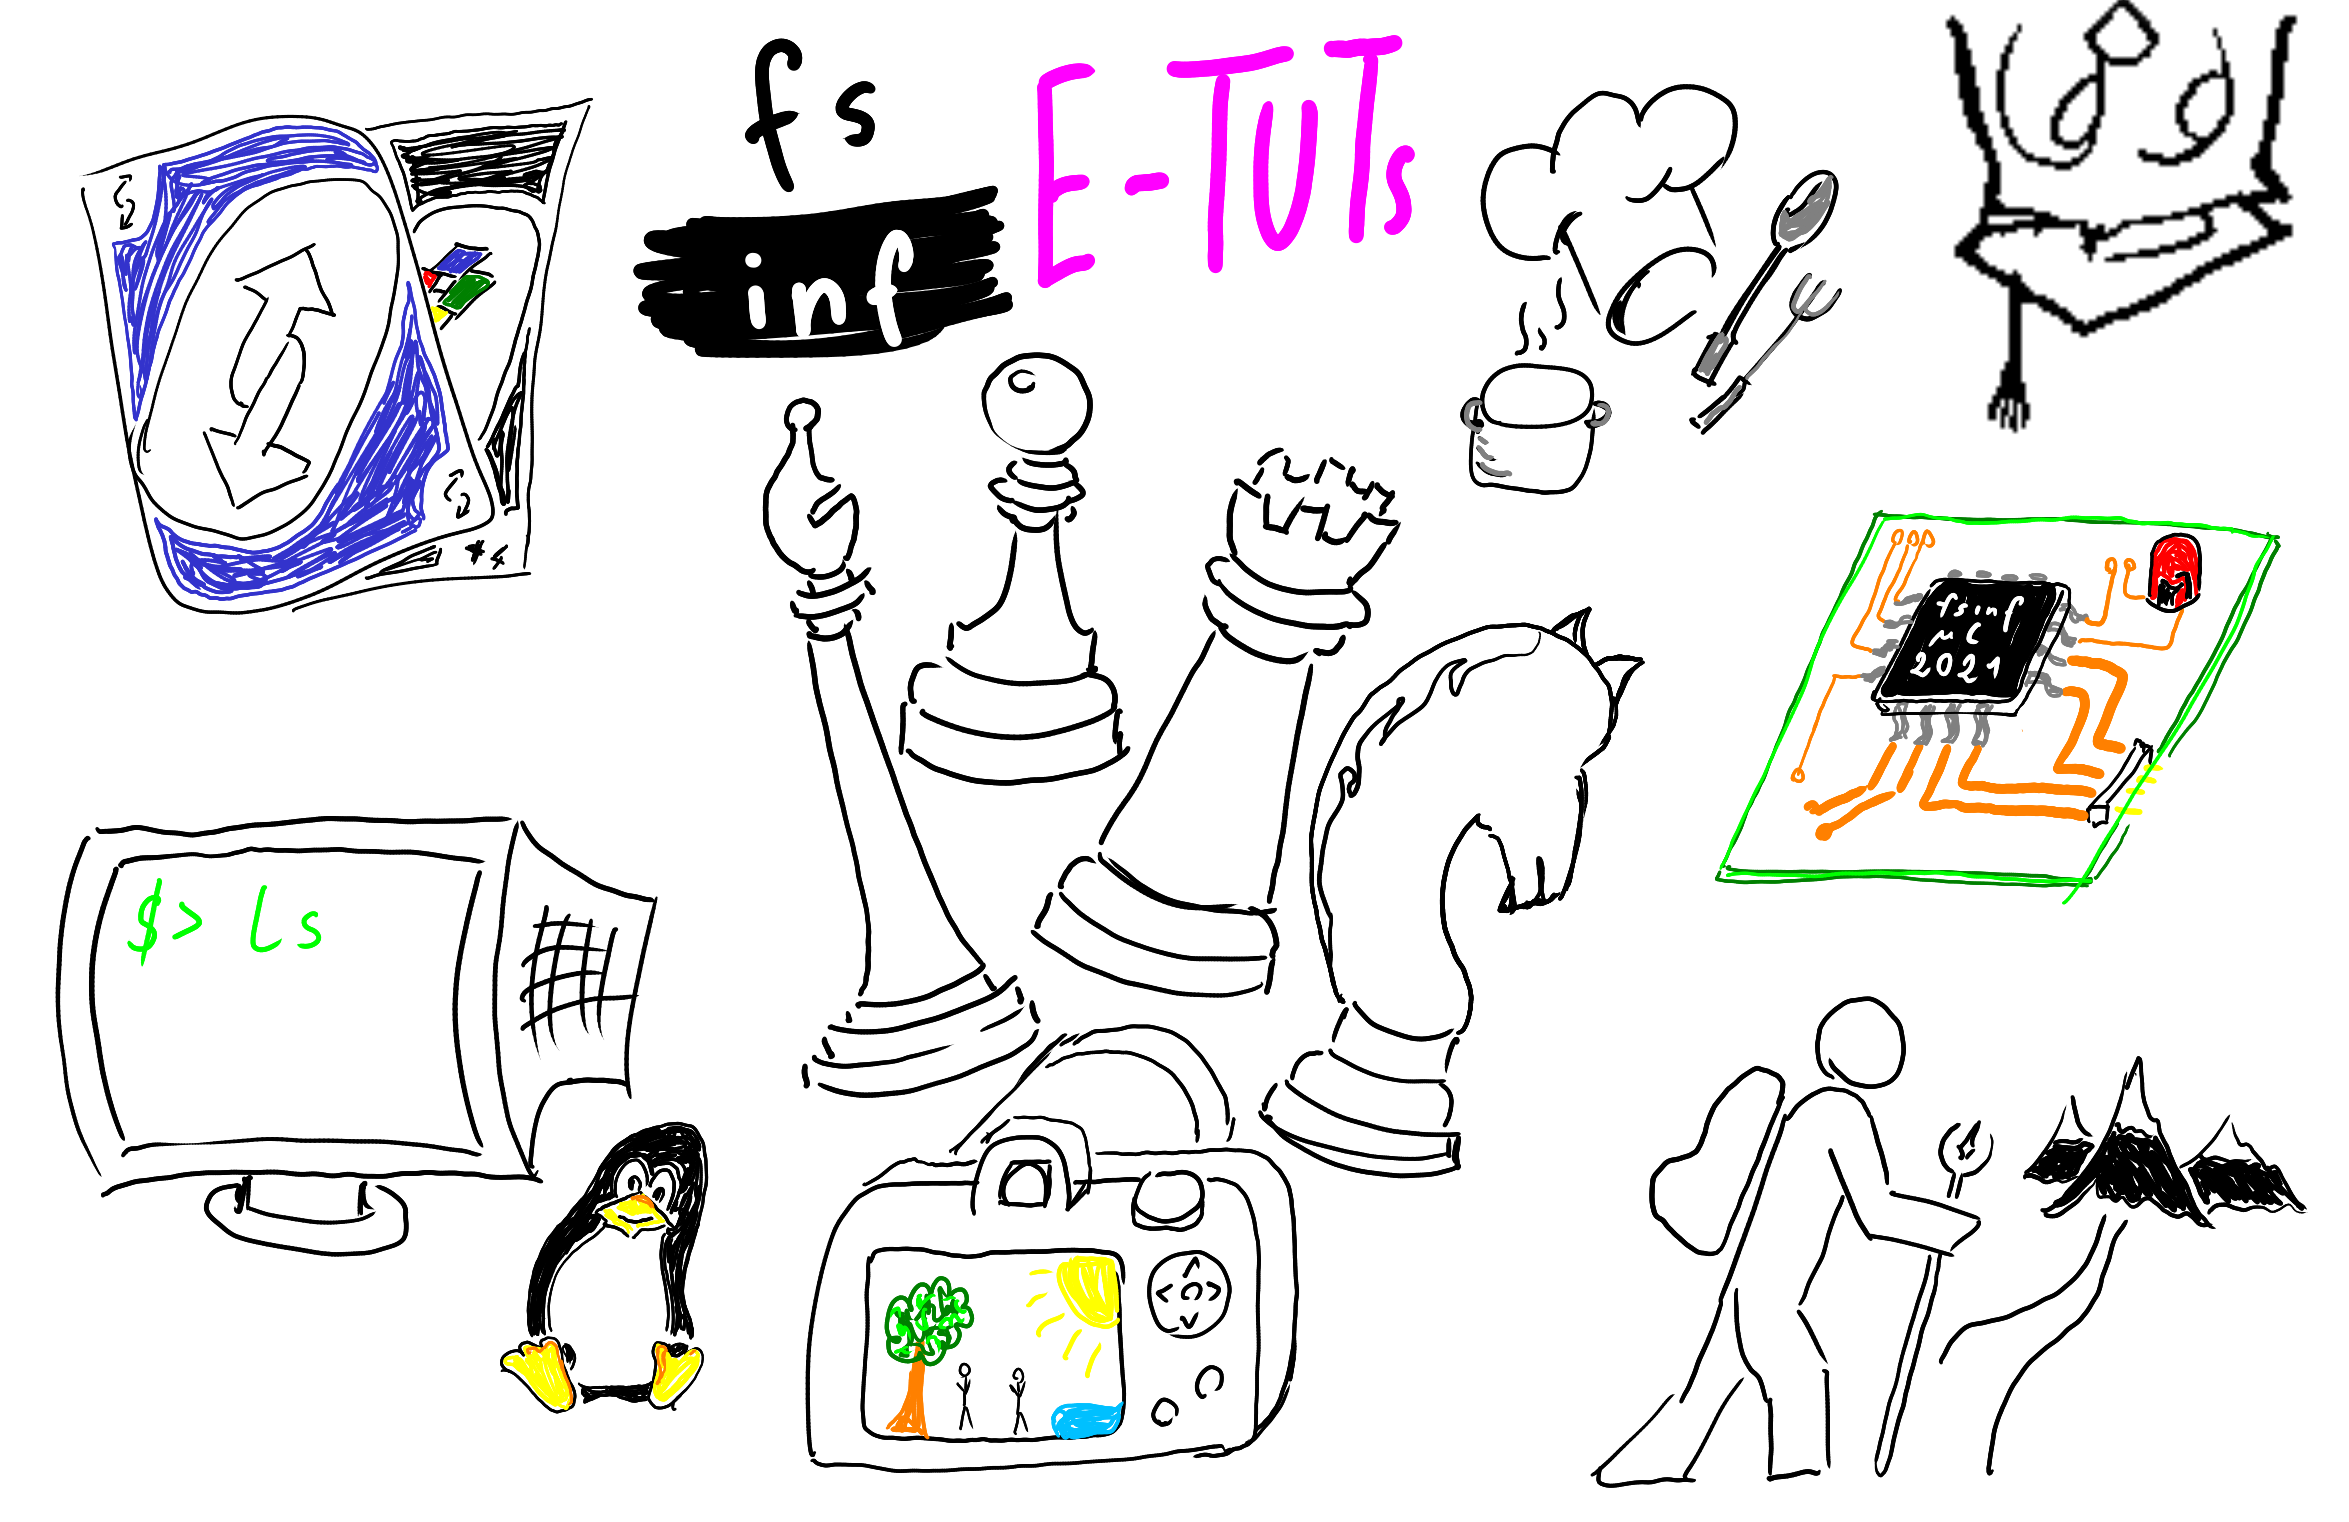 Verschiedene Symbole Grafiken zeigen unterschiedliche Tätigkeiten, die im Rahmen der FSINF E-Tuts gemacht werden können, darunter Schach, Fotografie, Kochen, Wandern, & Command-Line Tools.